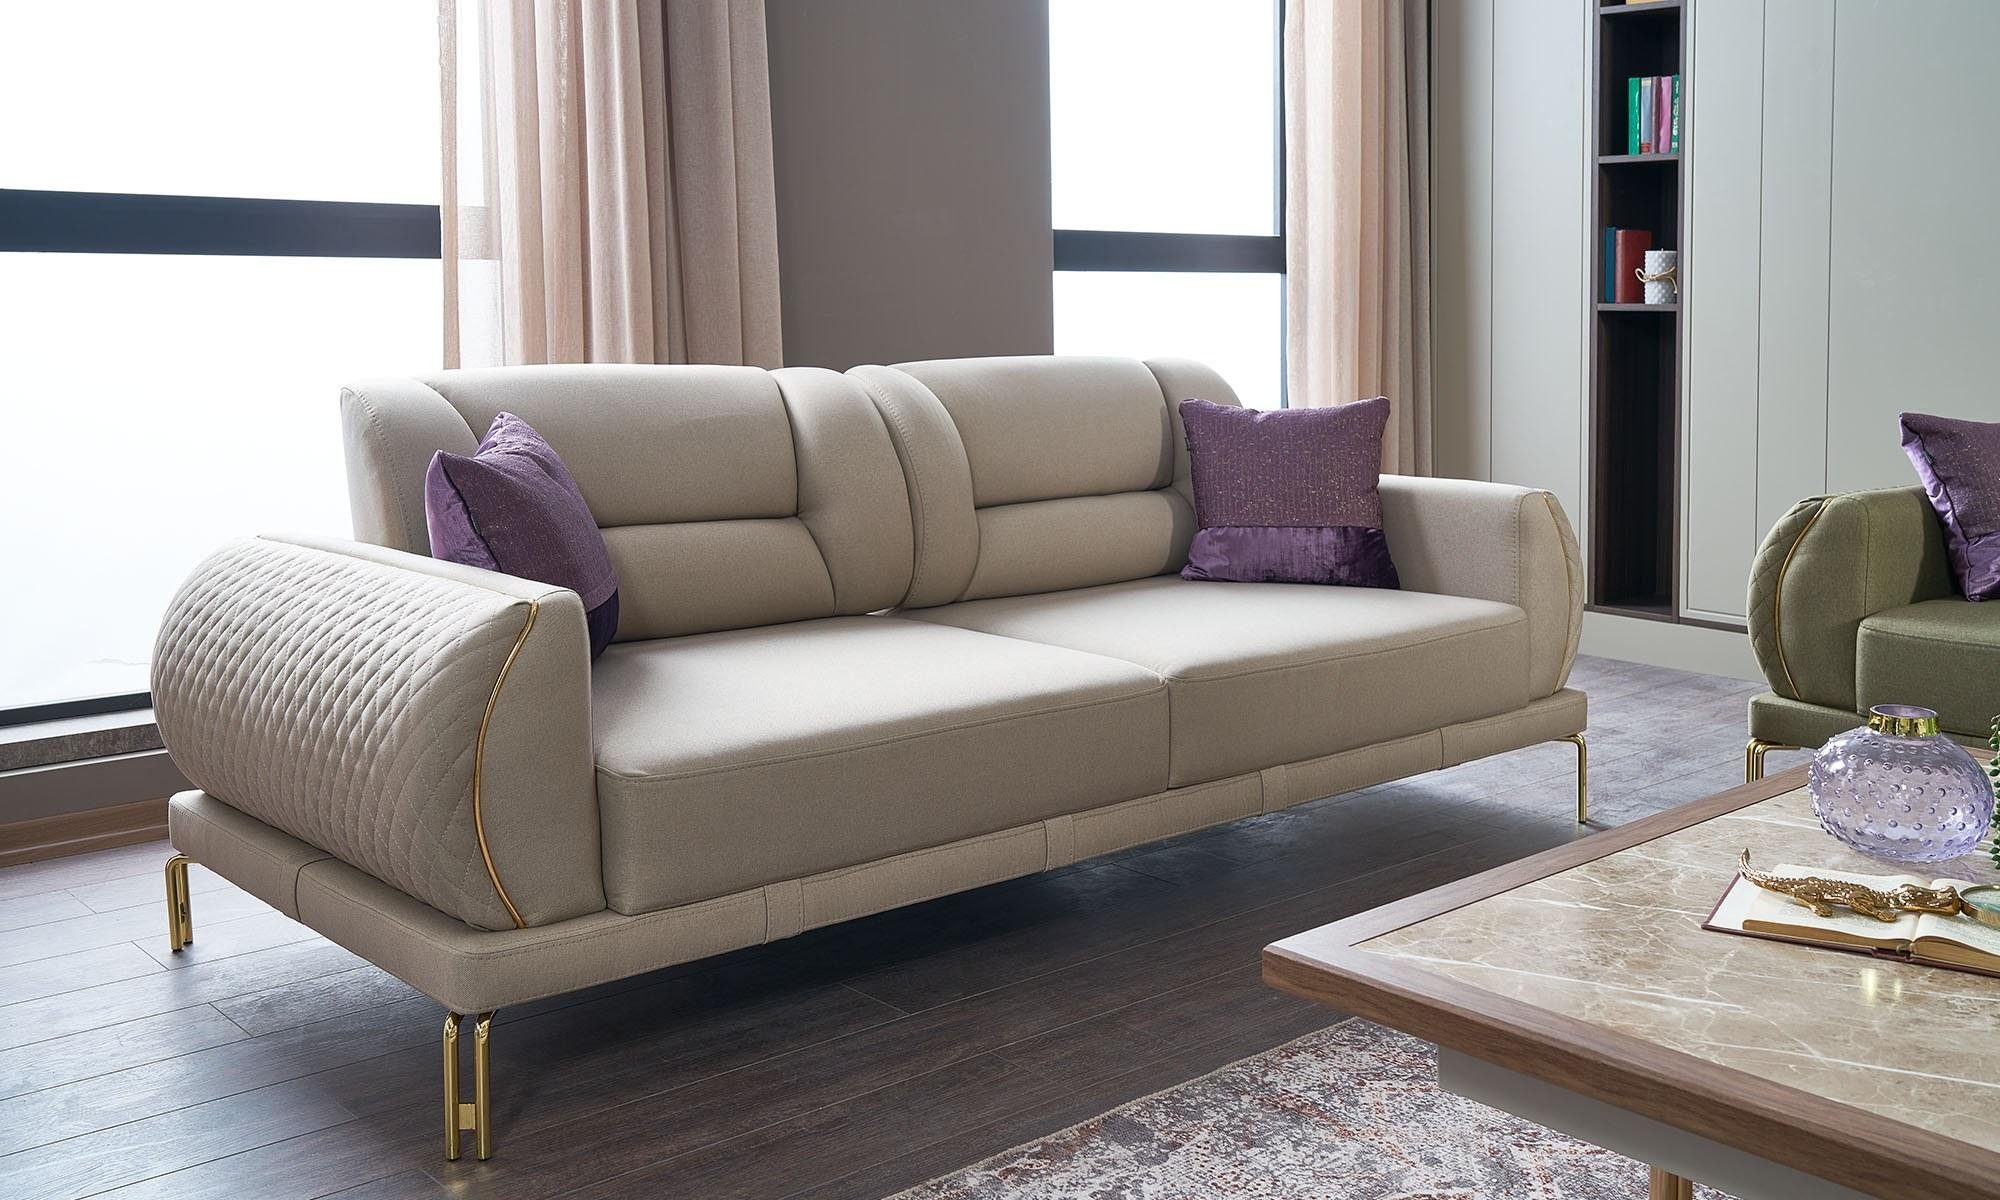 JVmoebel 3-Sitzer Dreisitzer Couch Sofa 3 Sitzer Beige Polstersofa Luxus, 1 Teile, Made in Europa